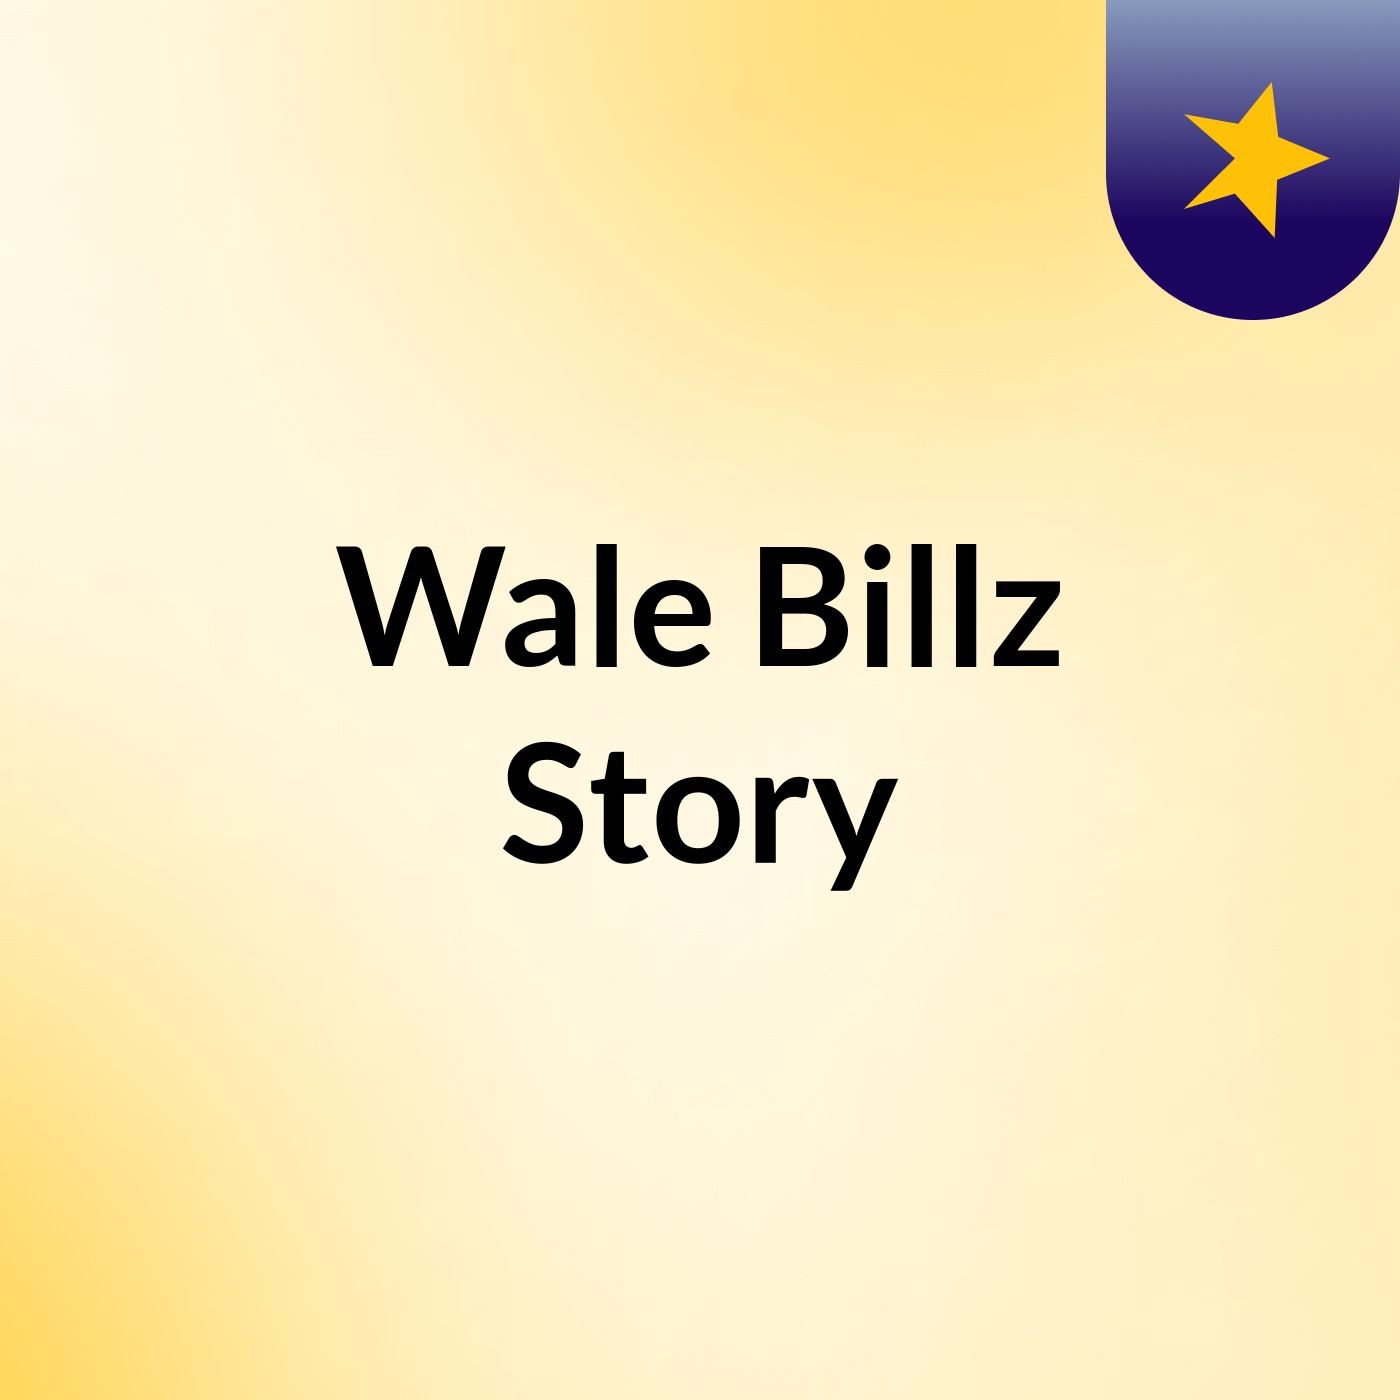 Wale Billz Story